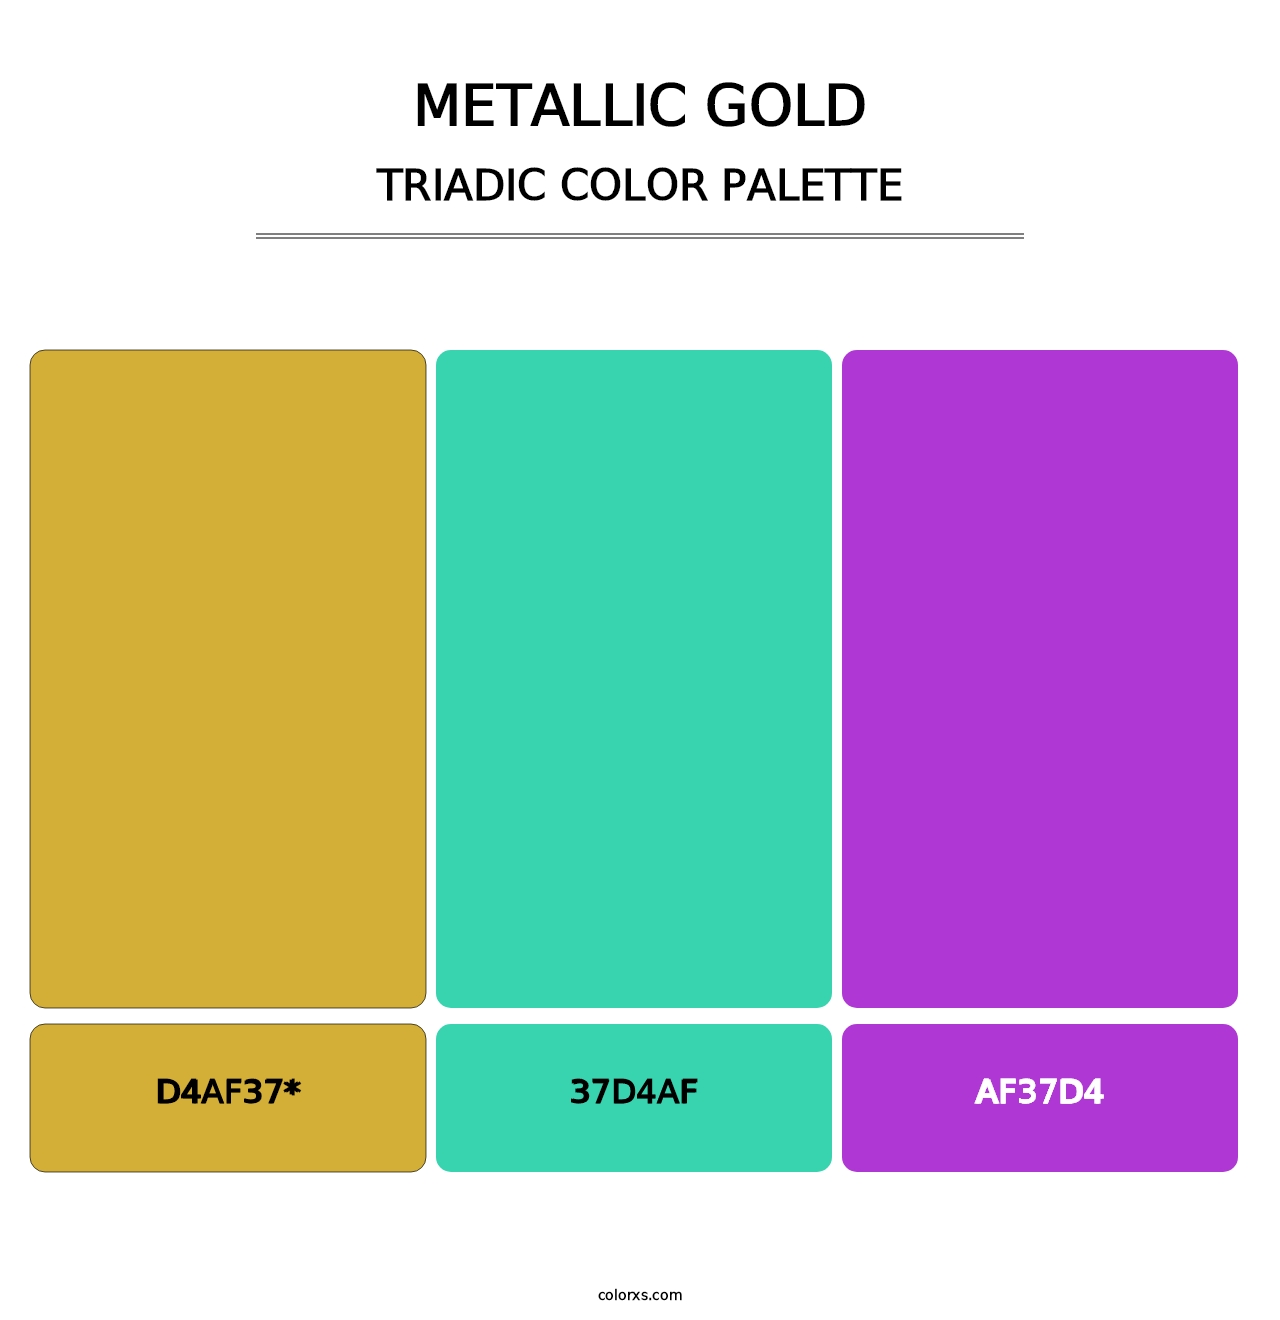 Metallic Gold - Triadic Color Palette